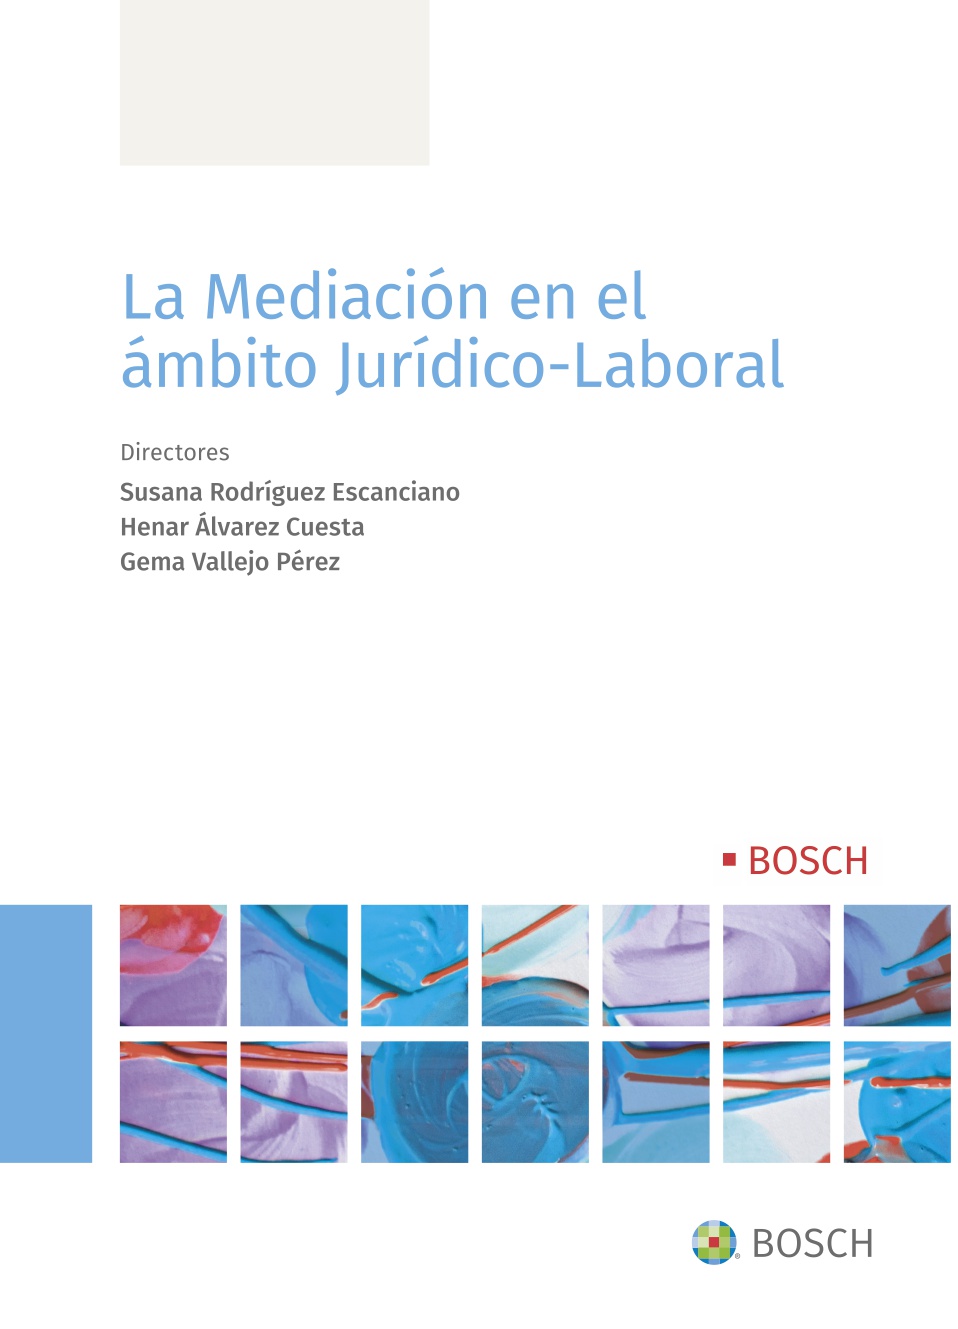 La mediación en el ámbito jurídico-laboral (9788490906194)